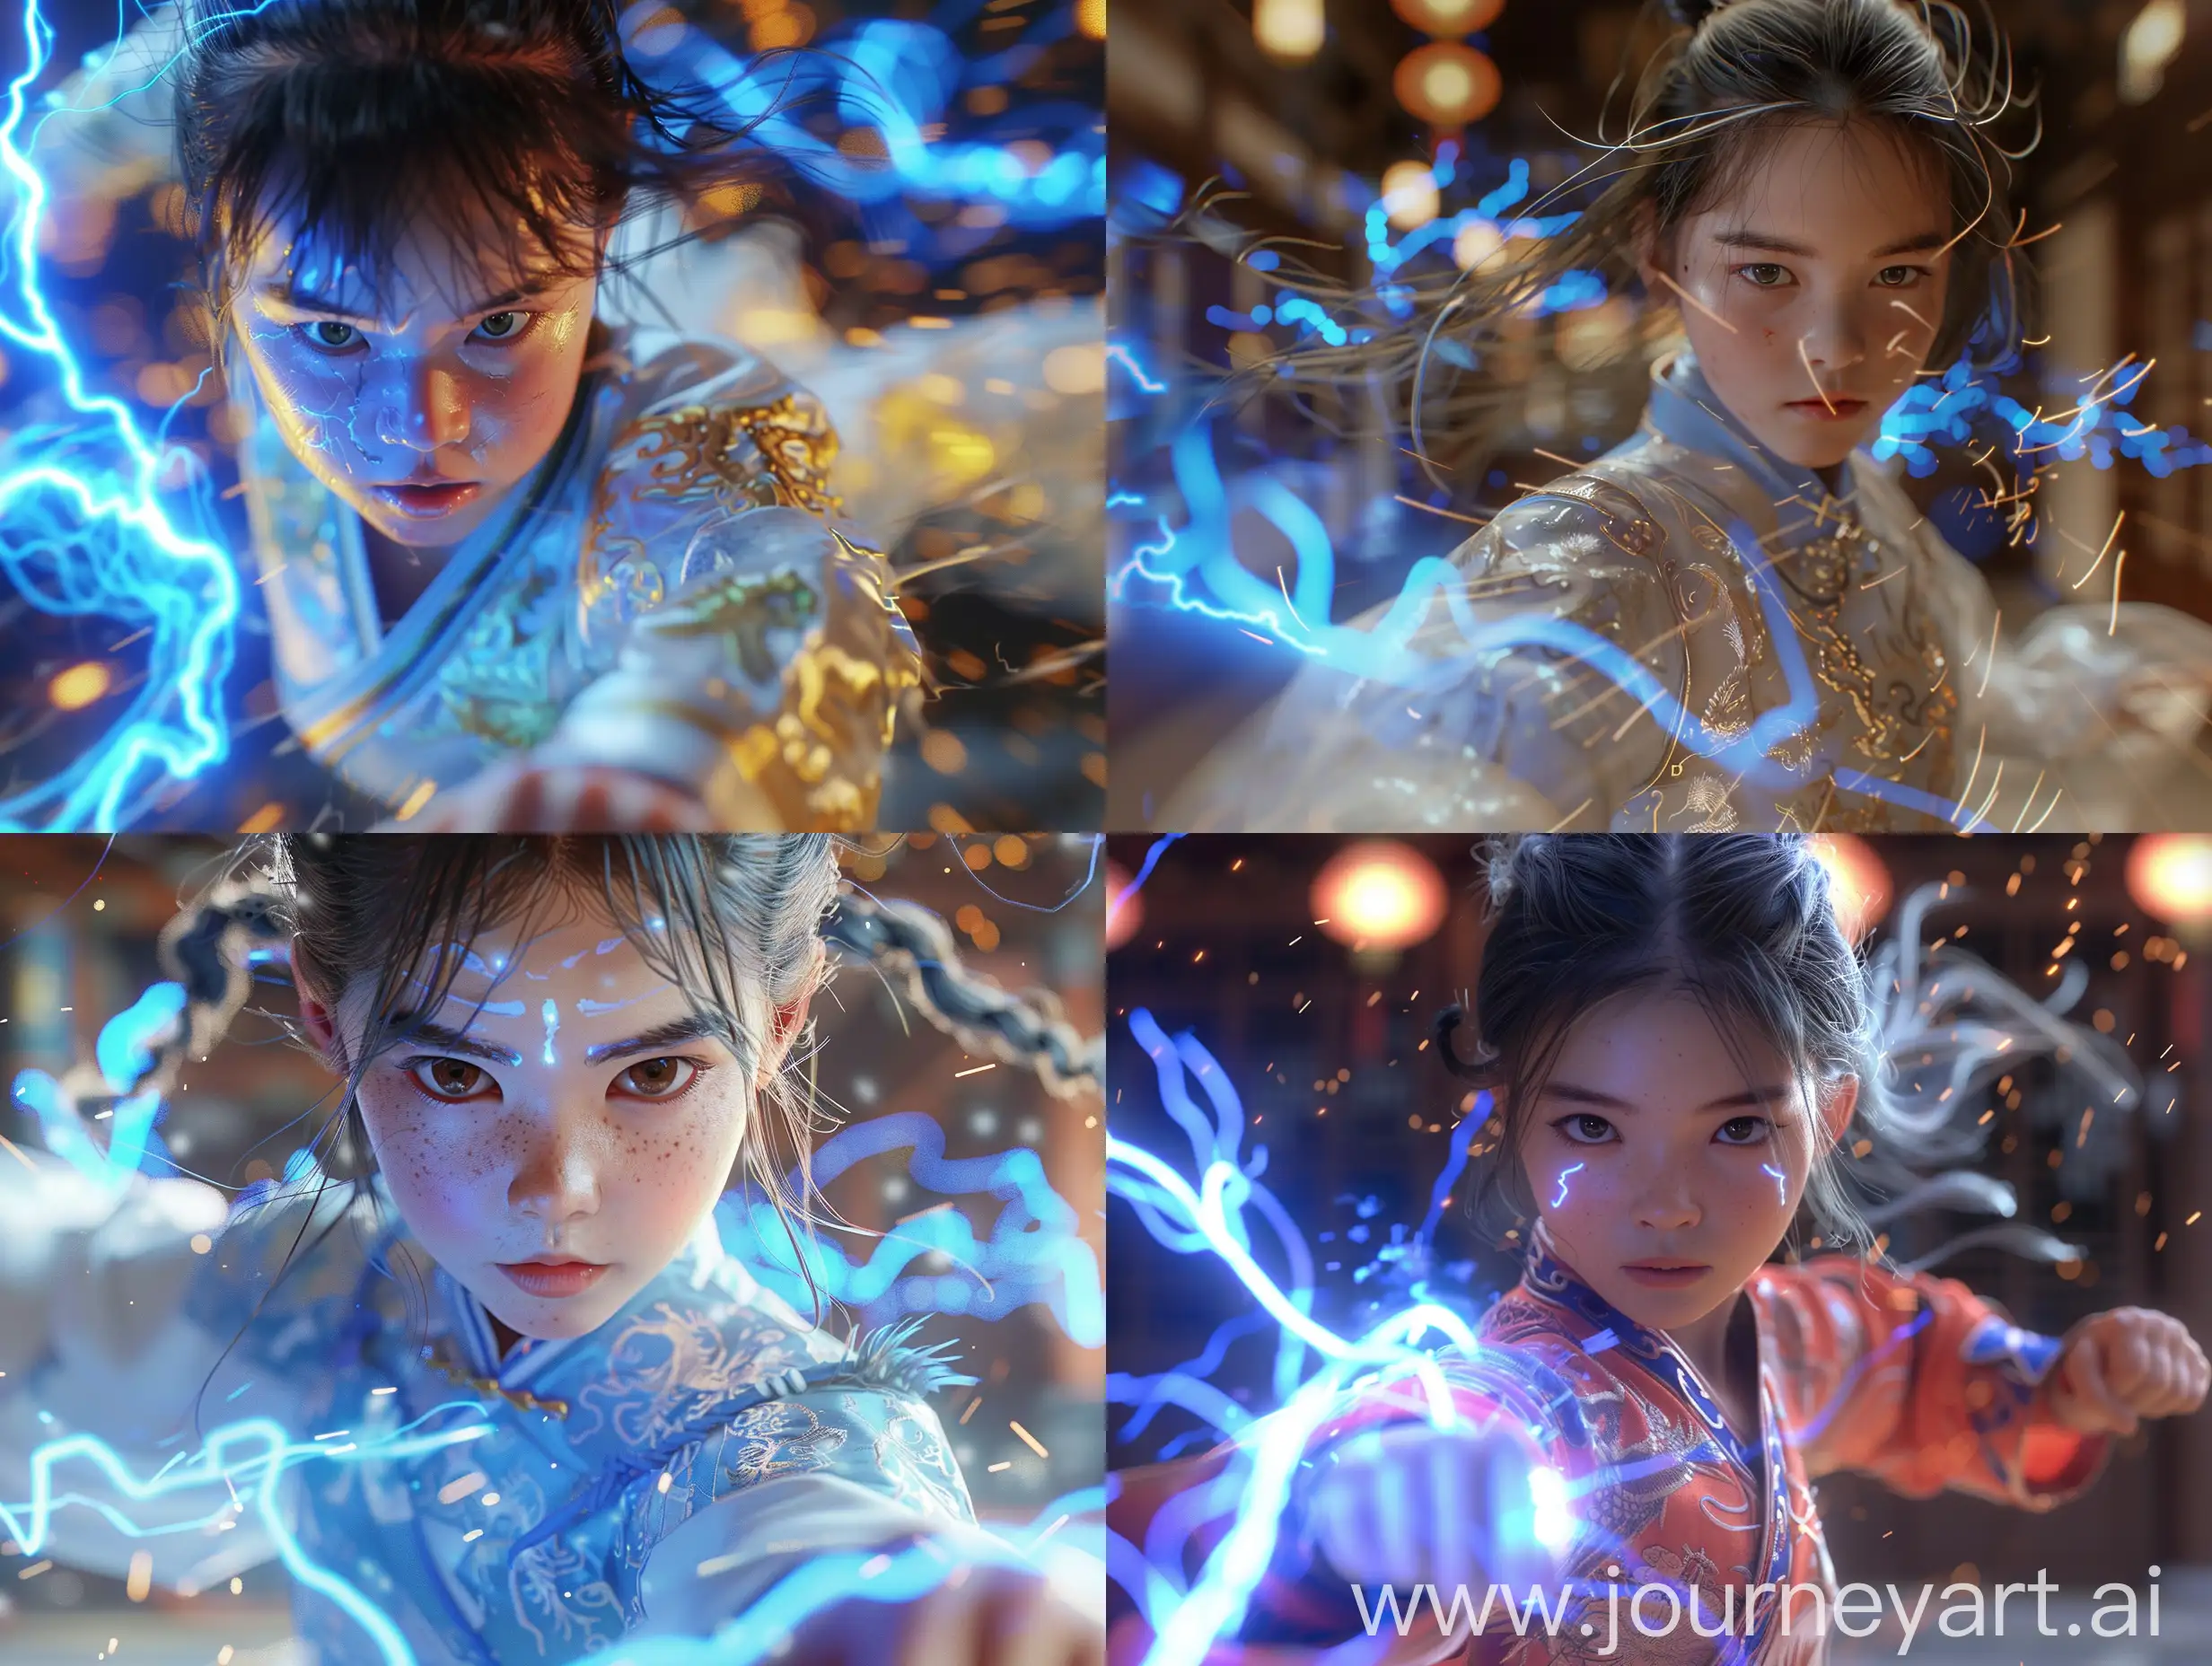 故事感，超逼真的中国武术12岁小女孩，运动模糊，蓝色闪电，中国风格，许多细节，发光效果，高细节，细节拍摄(Ecu)，虚幻引擎，Quixel Megascans渲染，正面半身，3D